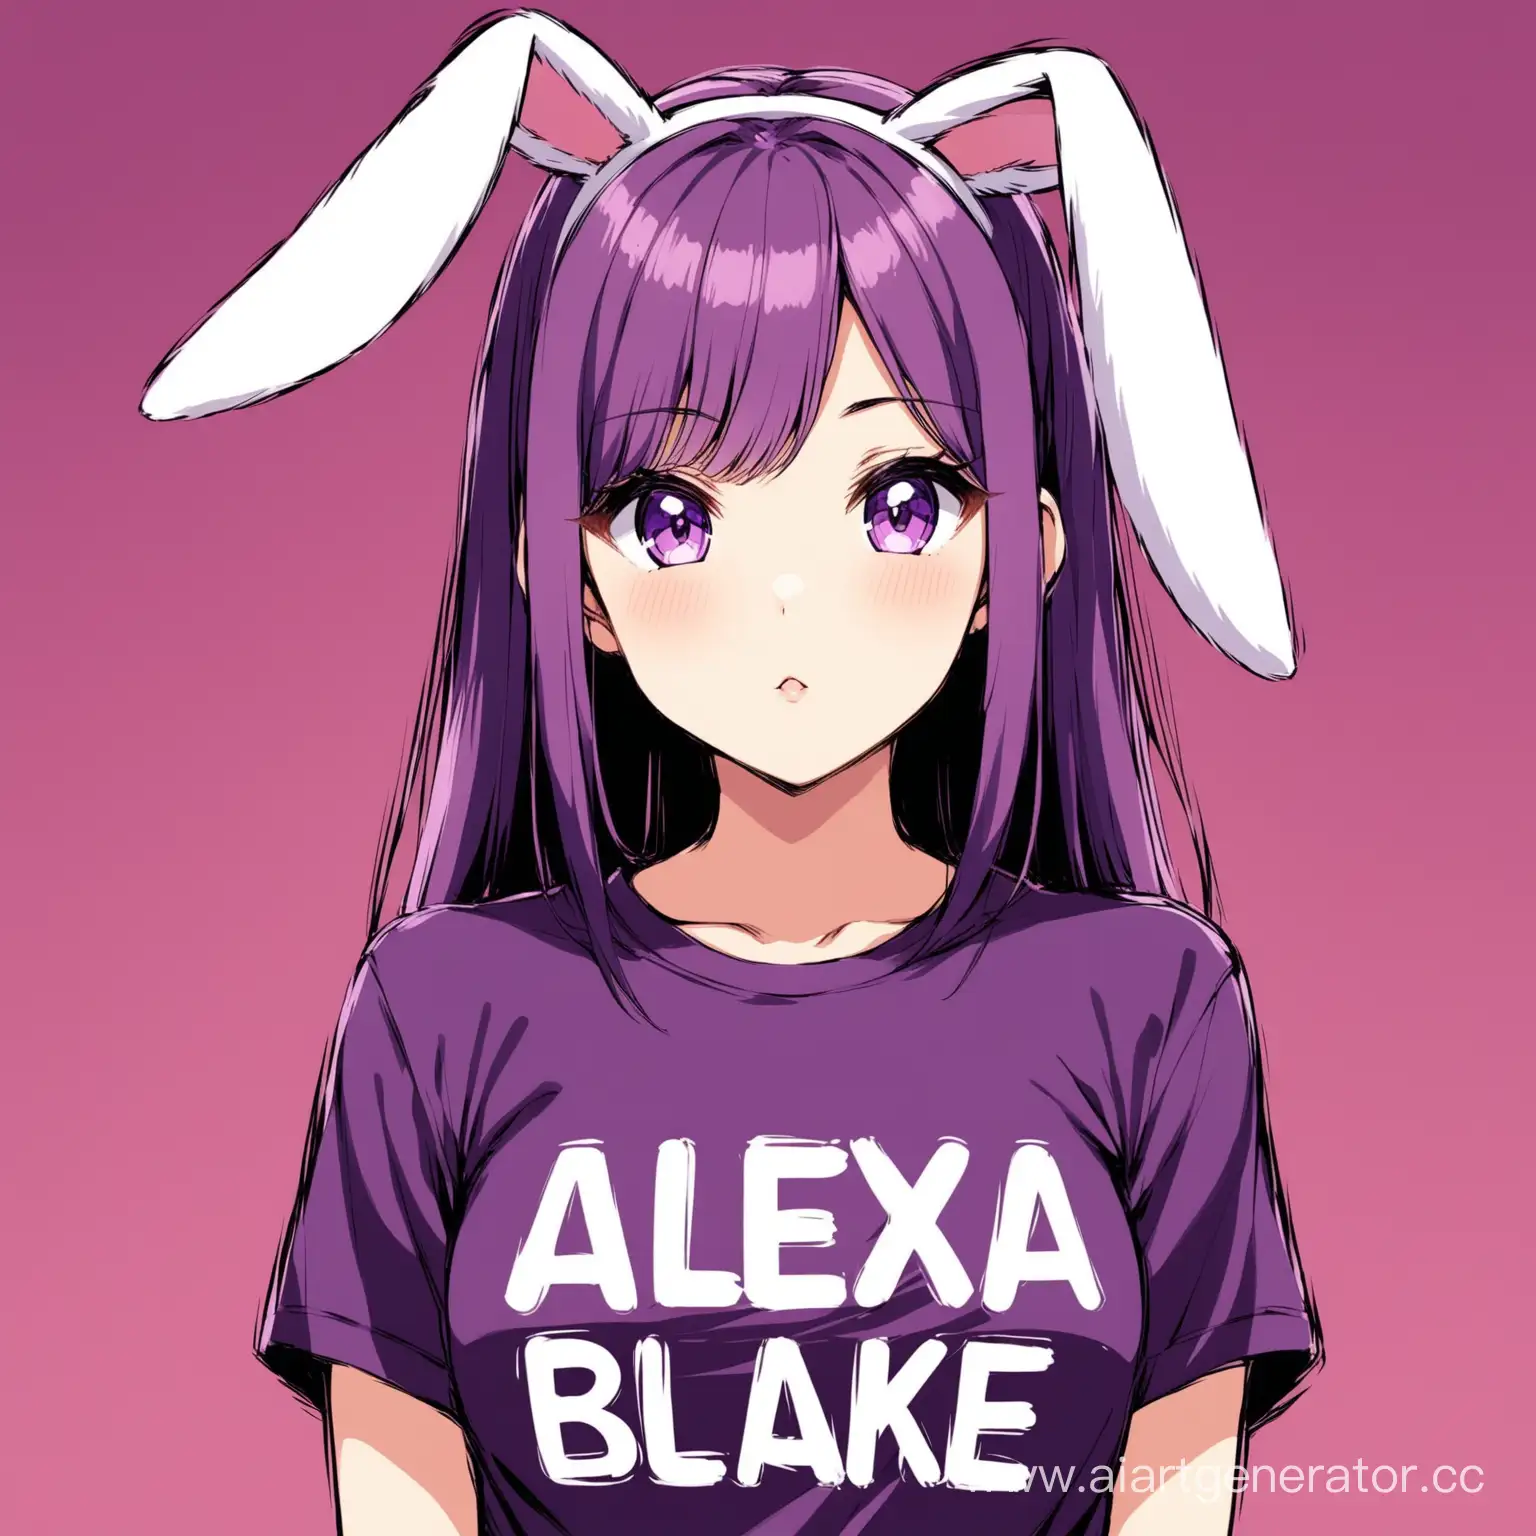 Anime-Girl-in-Rabbit-Ears-Holding-Alexa-Blake-TShirt